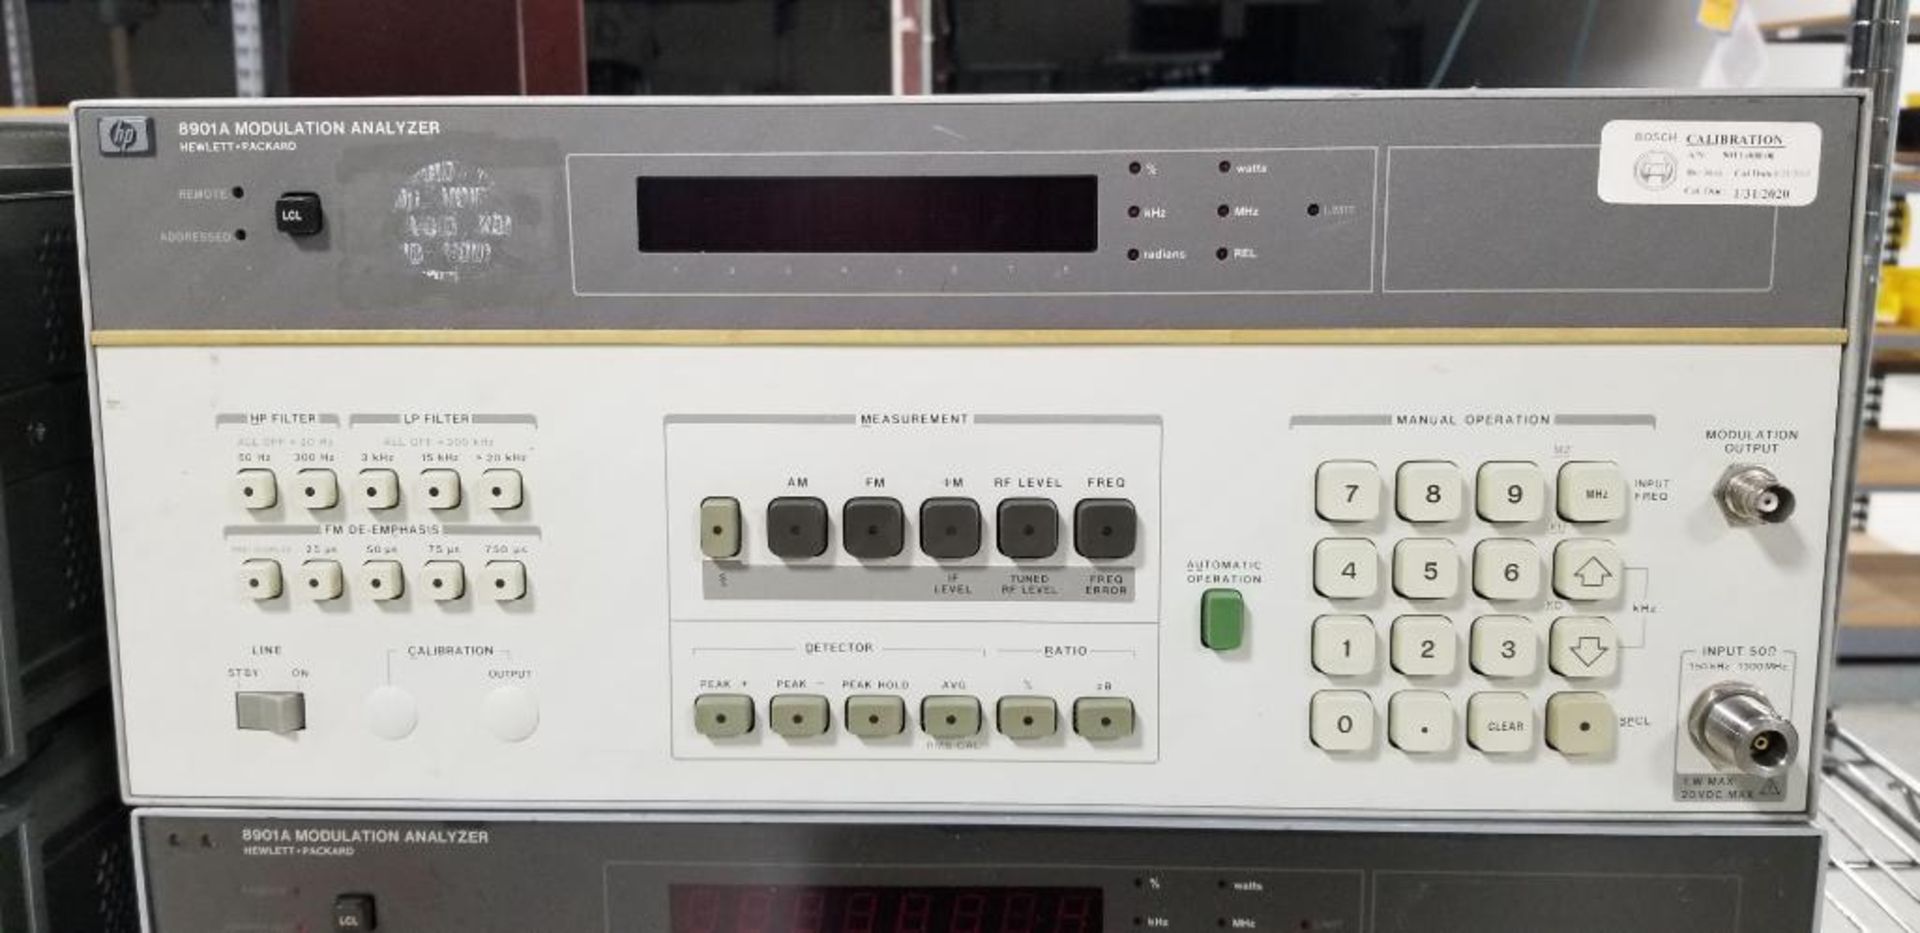 (4x) Hewlett Packard Modulation Analyzers, Model 8901A - Image 3 of 7